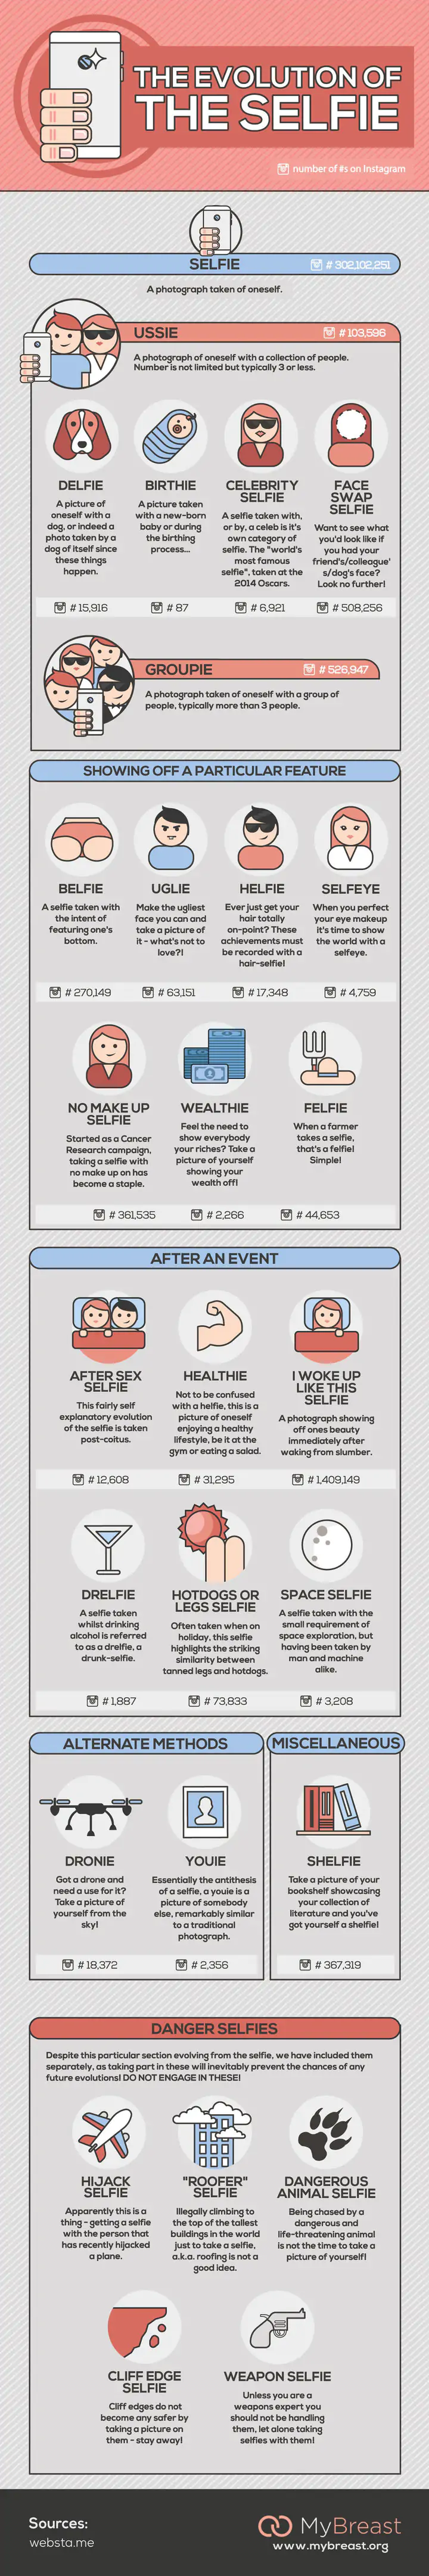 Selfie evolution infographic | Infographie : Selfie, Ussie, Delfie... connaissez-vous toutes les sortes de Selfies ?